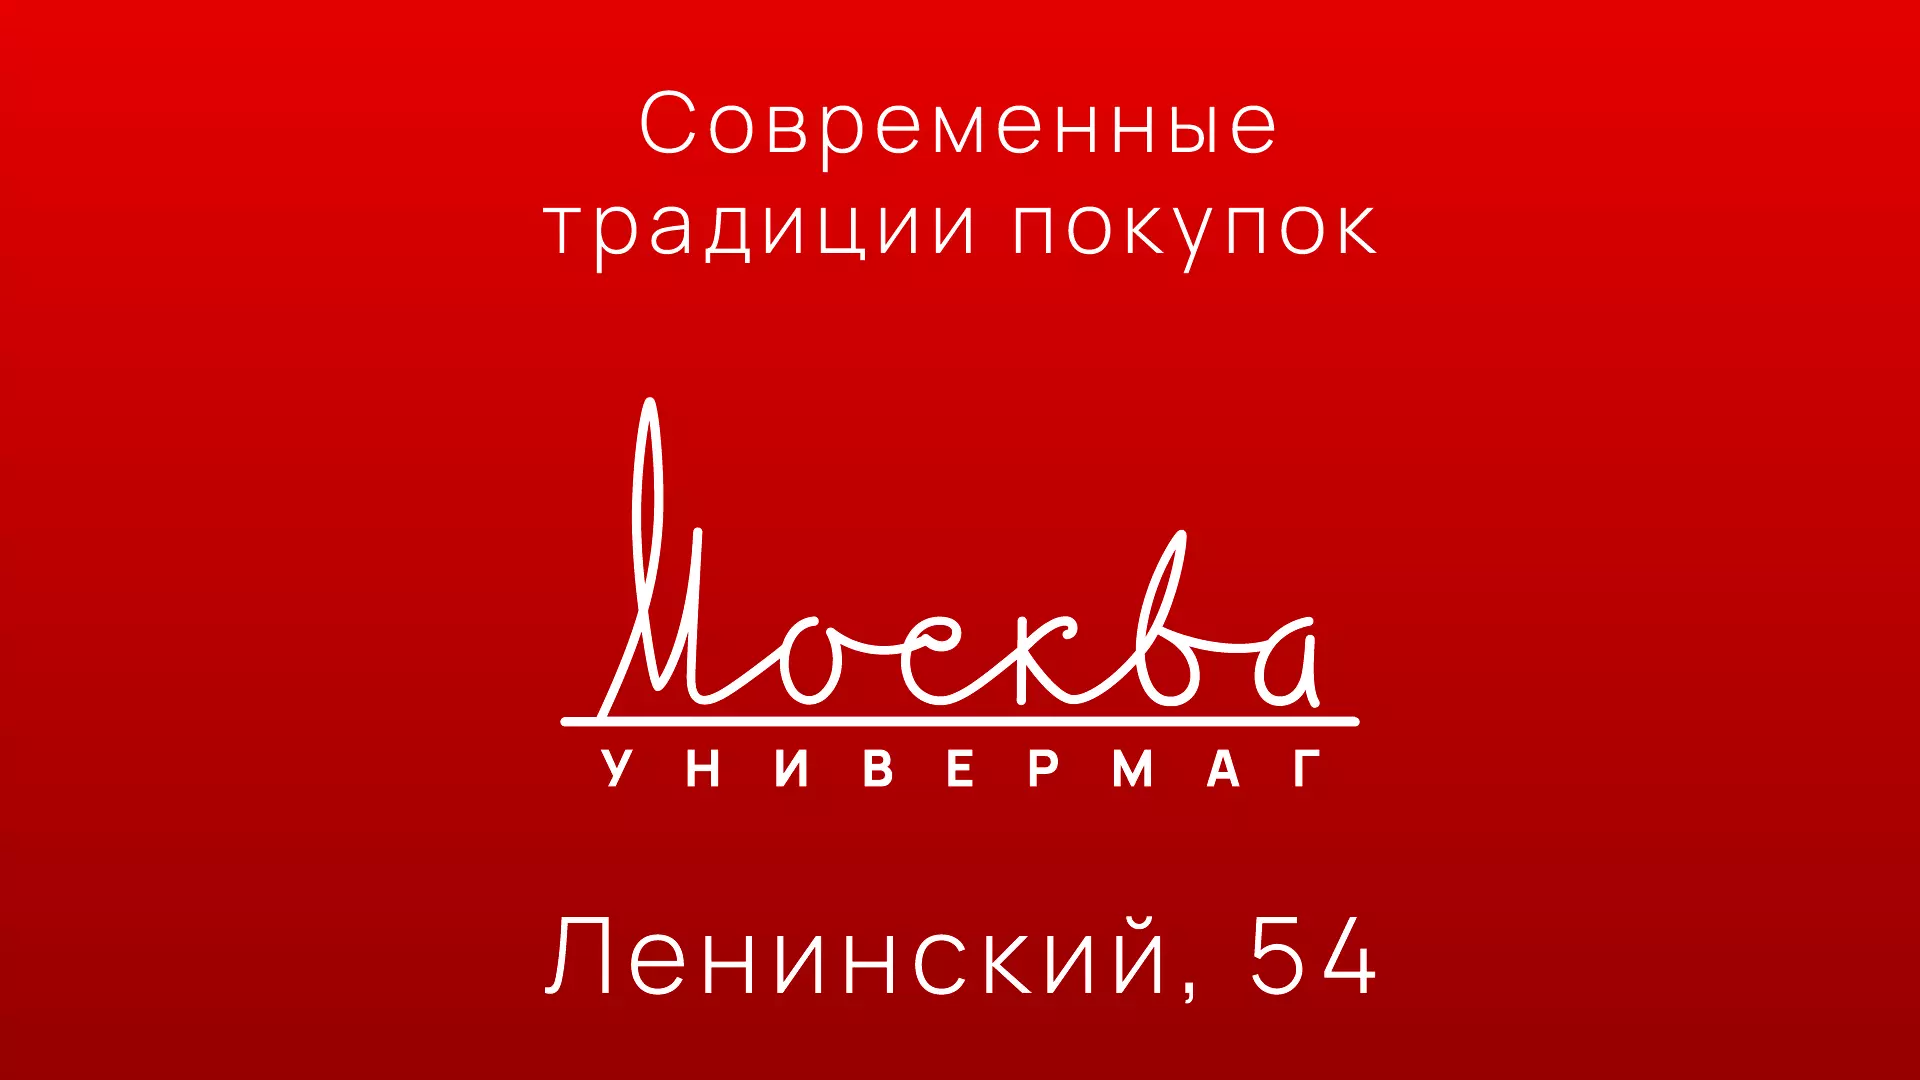 УНИВЕРМАГ МОСКВА - ЛЕНИНСКИЙ, 54